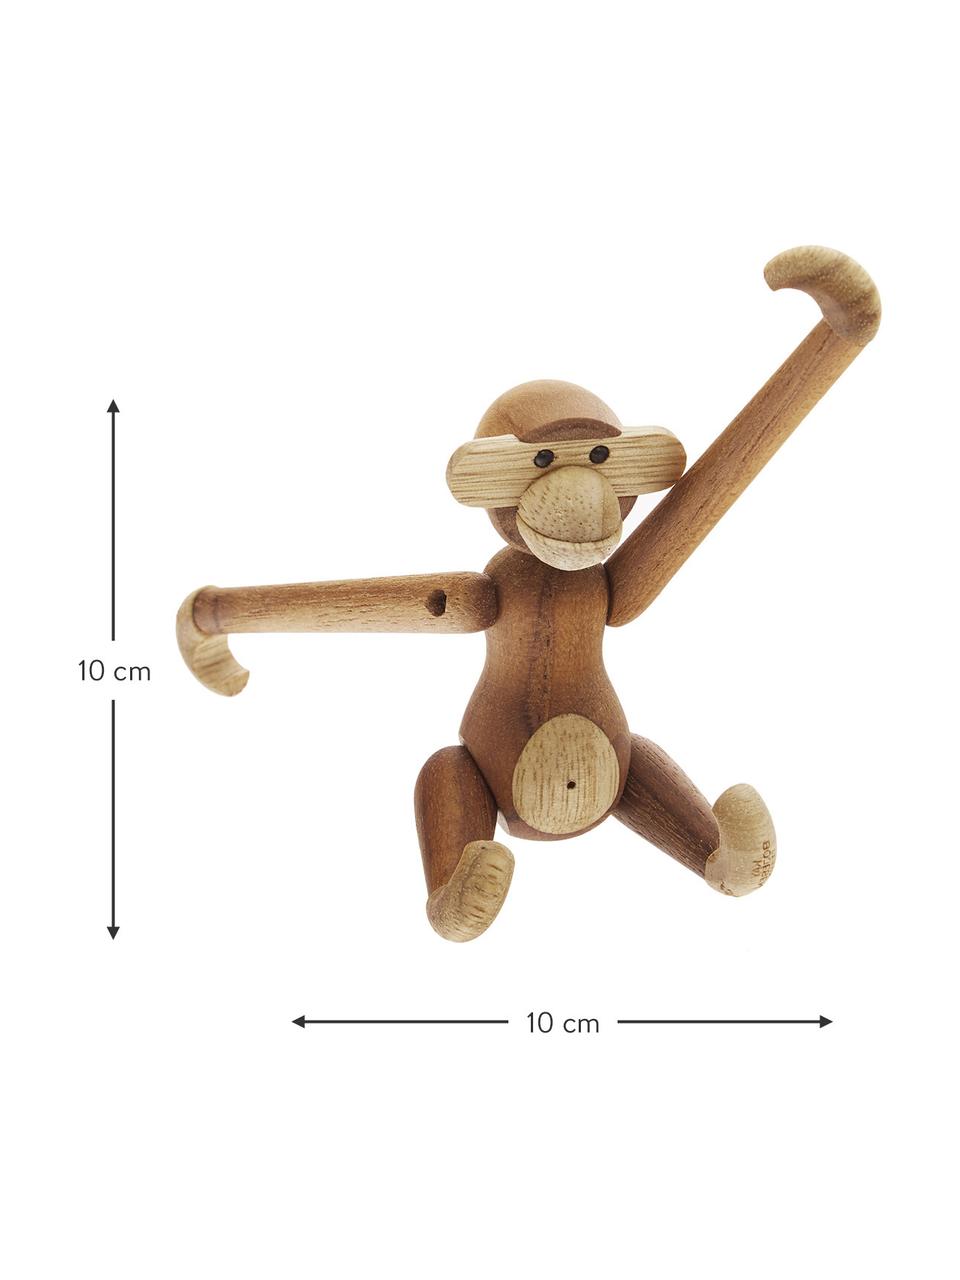 Designová dekorace z teakového dřeva Monkey, Teakové dřevo, dřevo limba, lakované, certifikace FSC, Teakové dřevo, Š 20 cm, V 19 cm